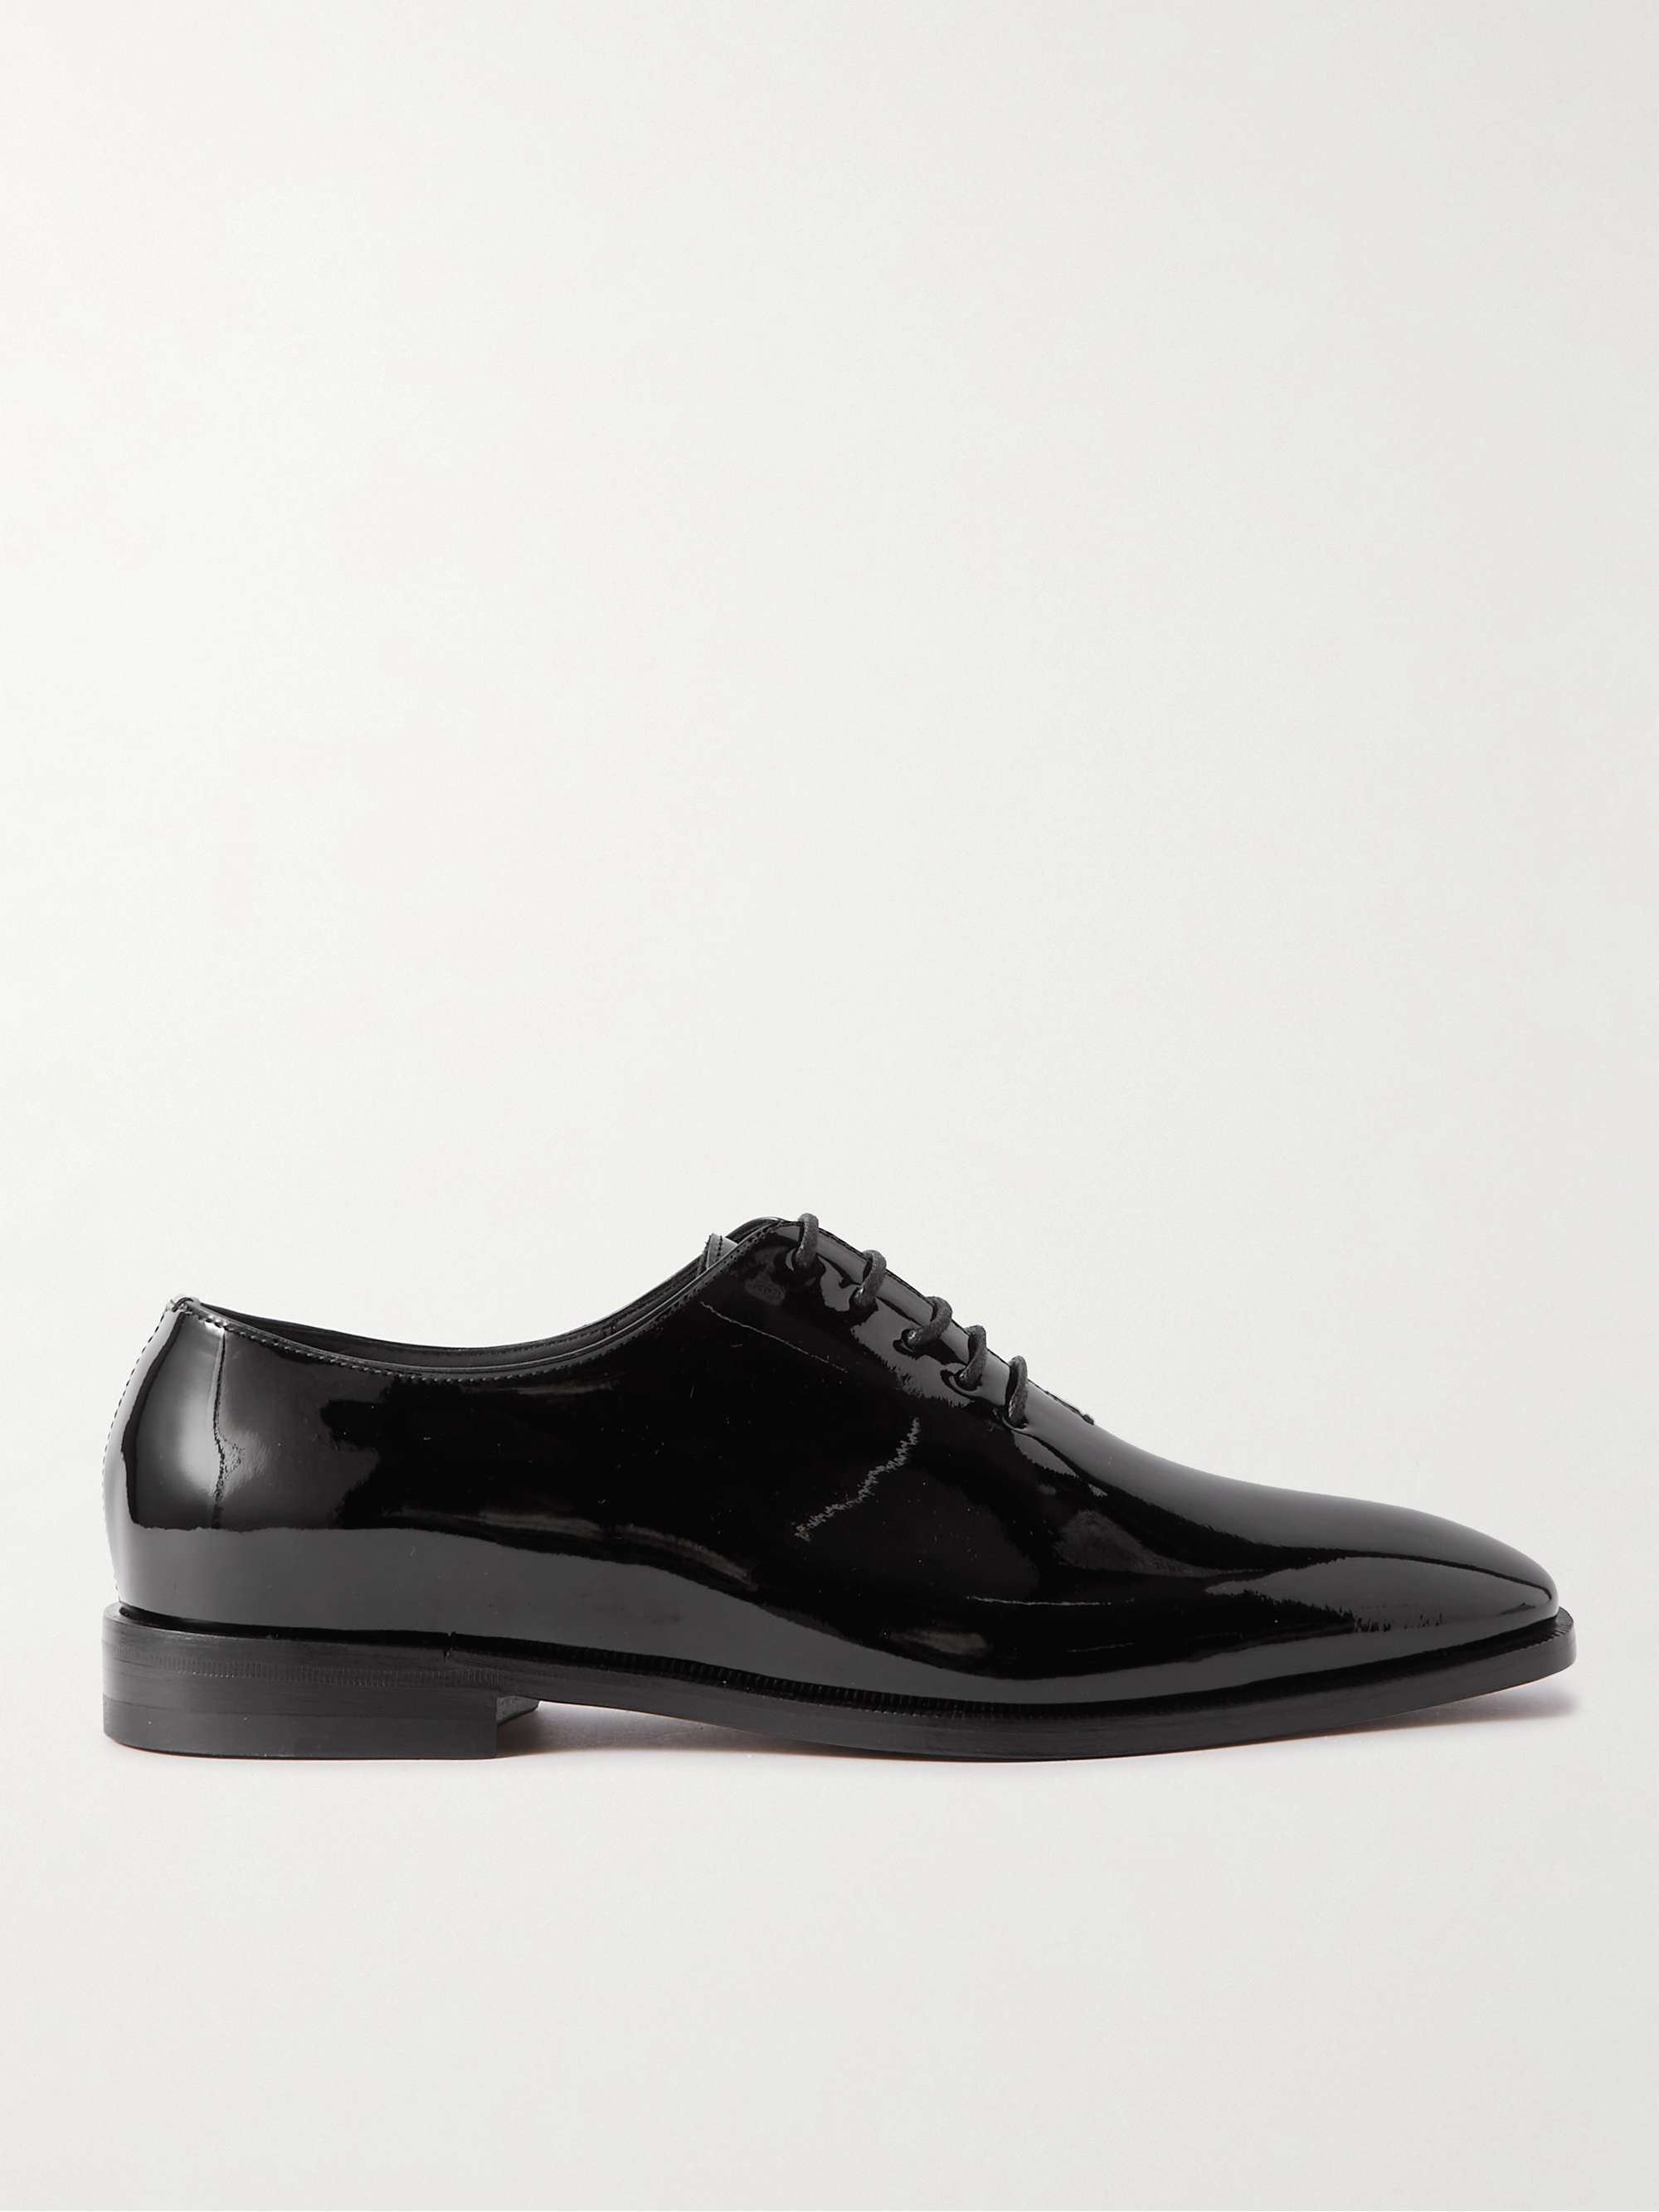 MANOLO BLAHNIK Whole-Cut Patent-Leather Oxford Shoes Men | MR PORTER